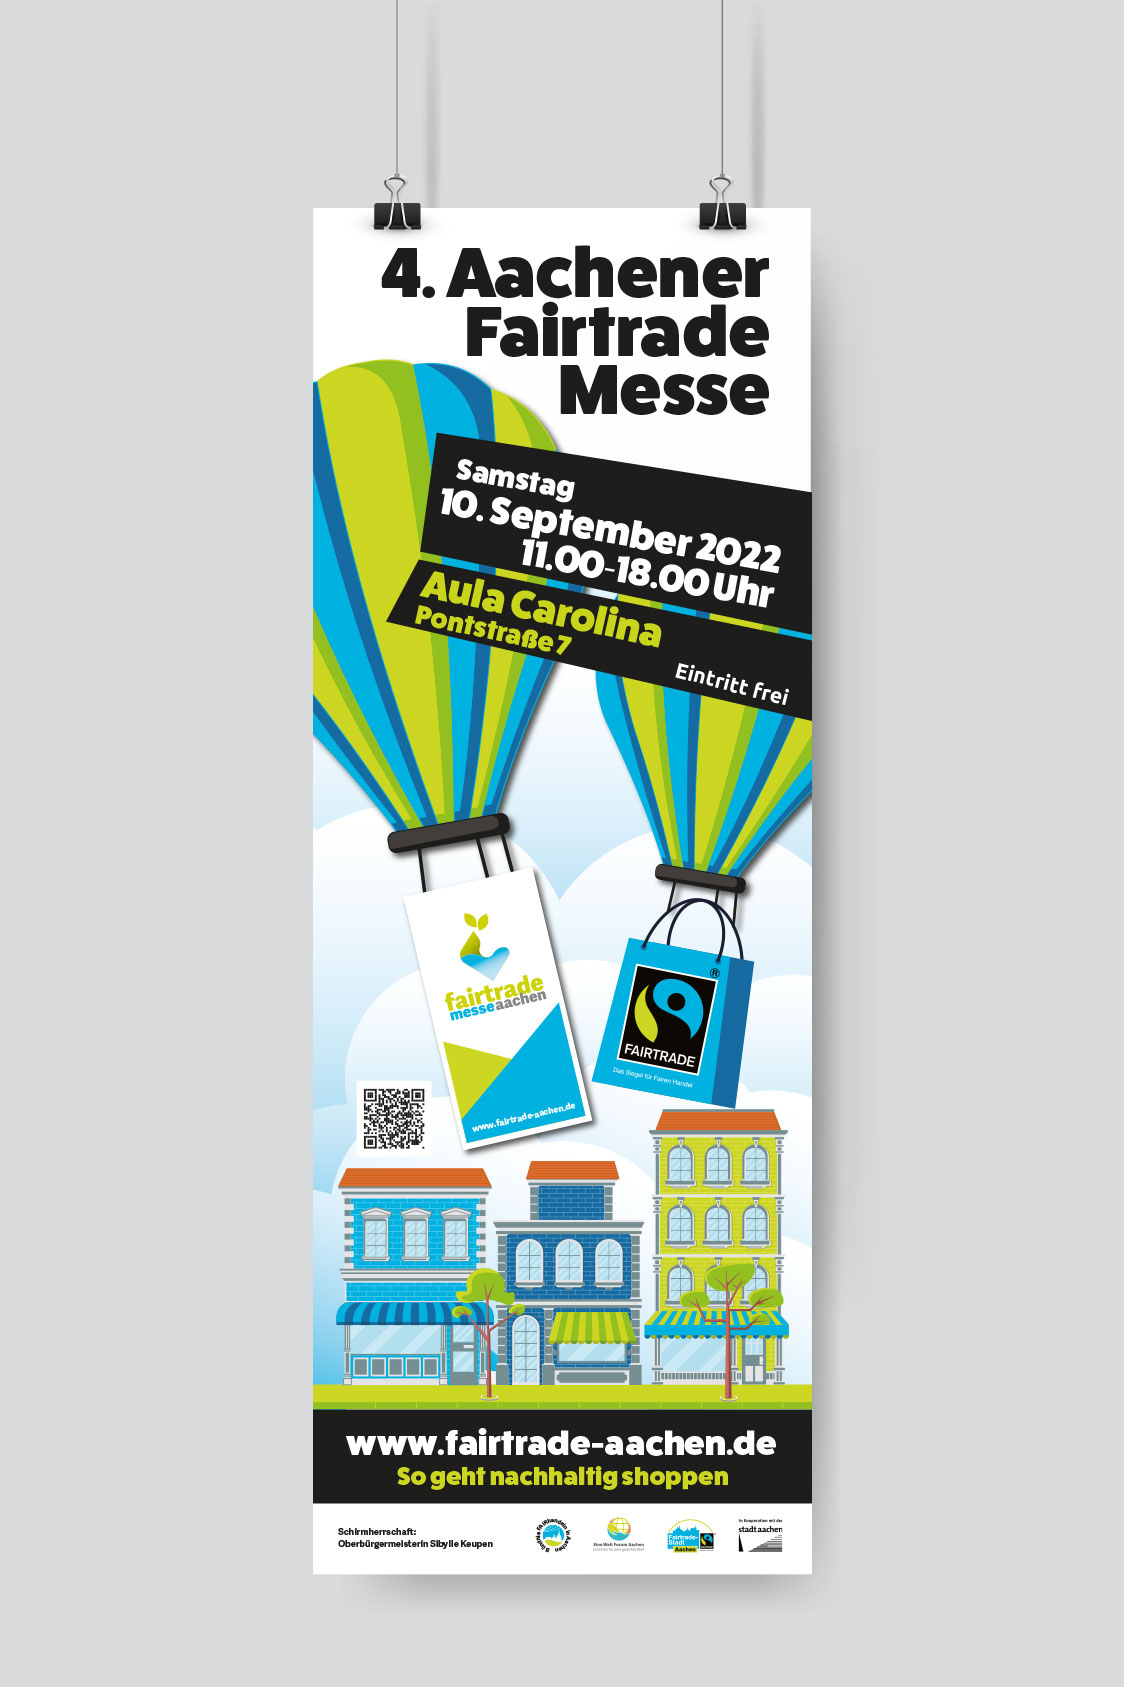 Fairtrade Messe Aachen